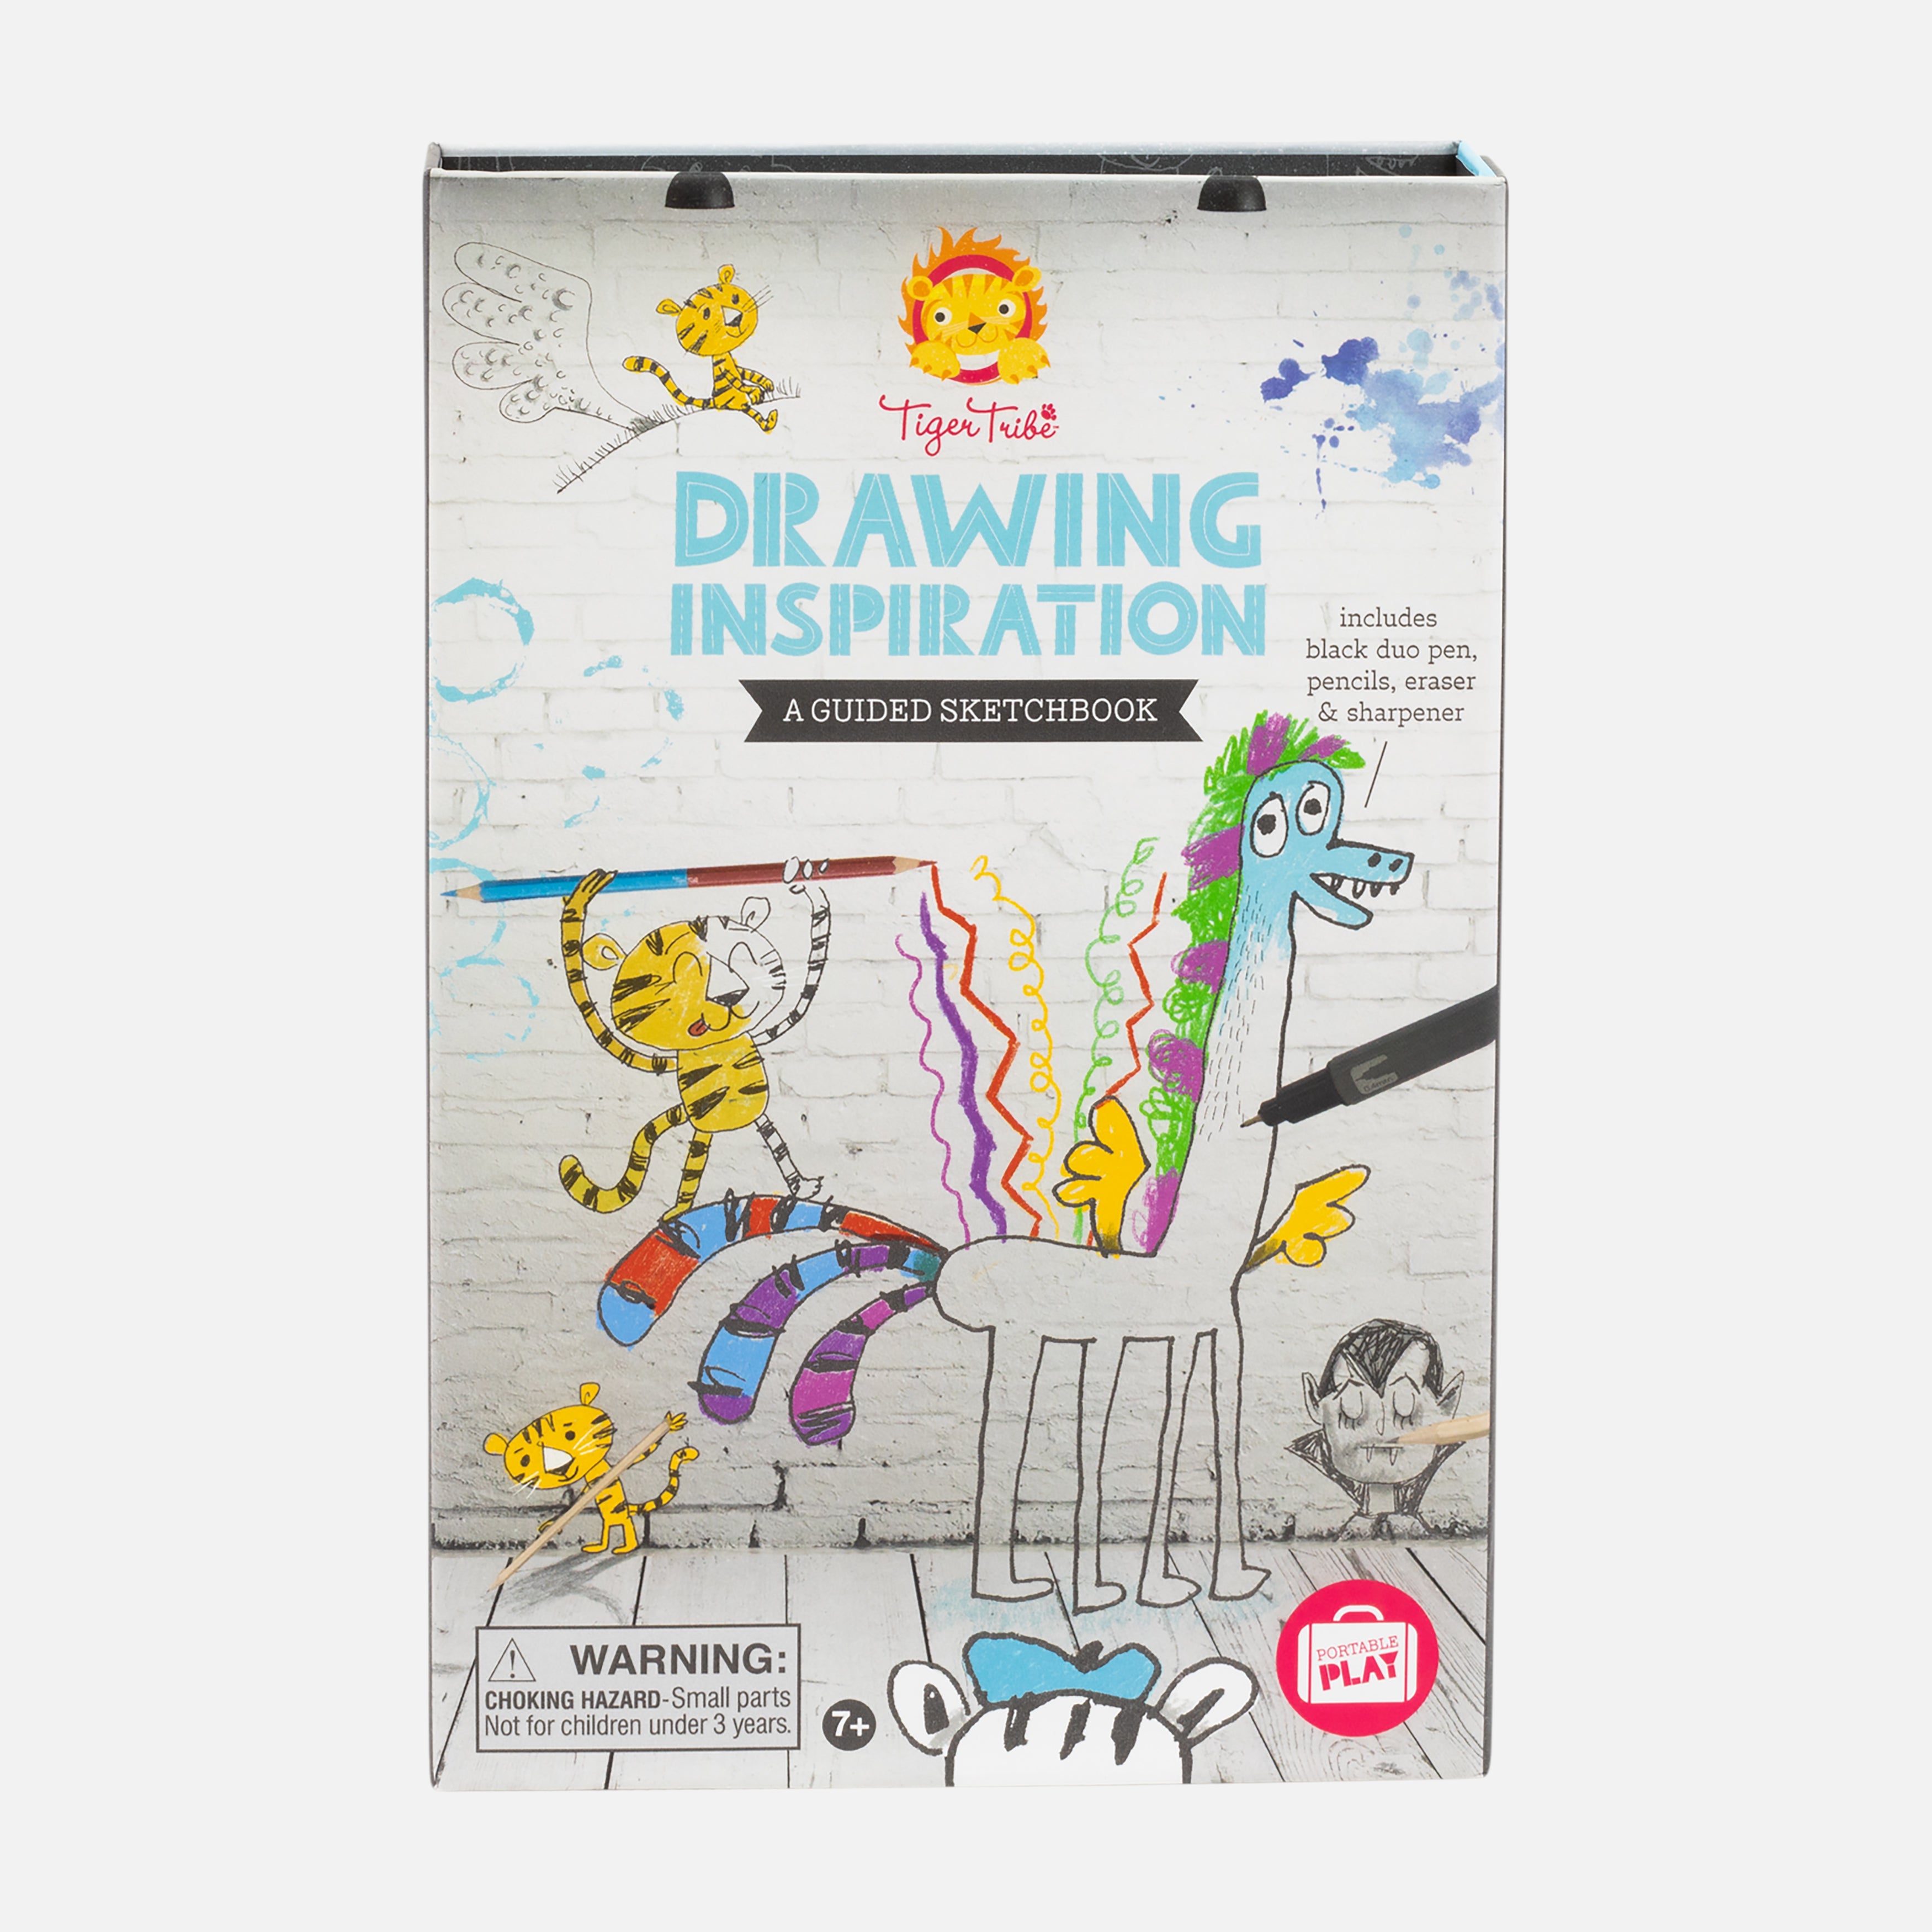 DrawingInspiration-AGuidedSketchbook-aFront_Grey.jpg